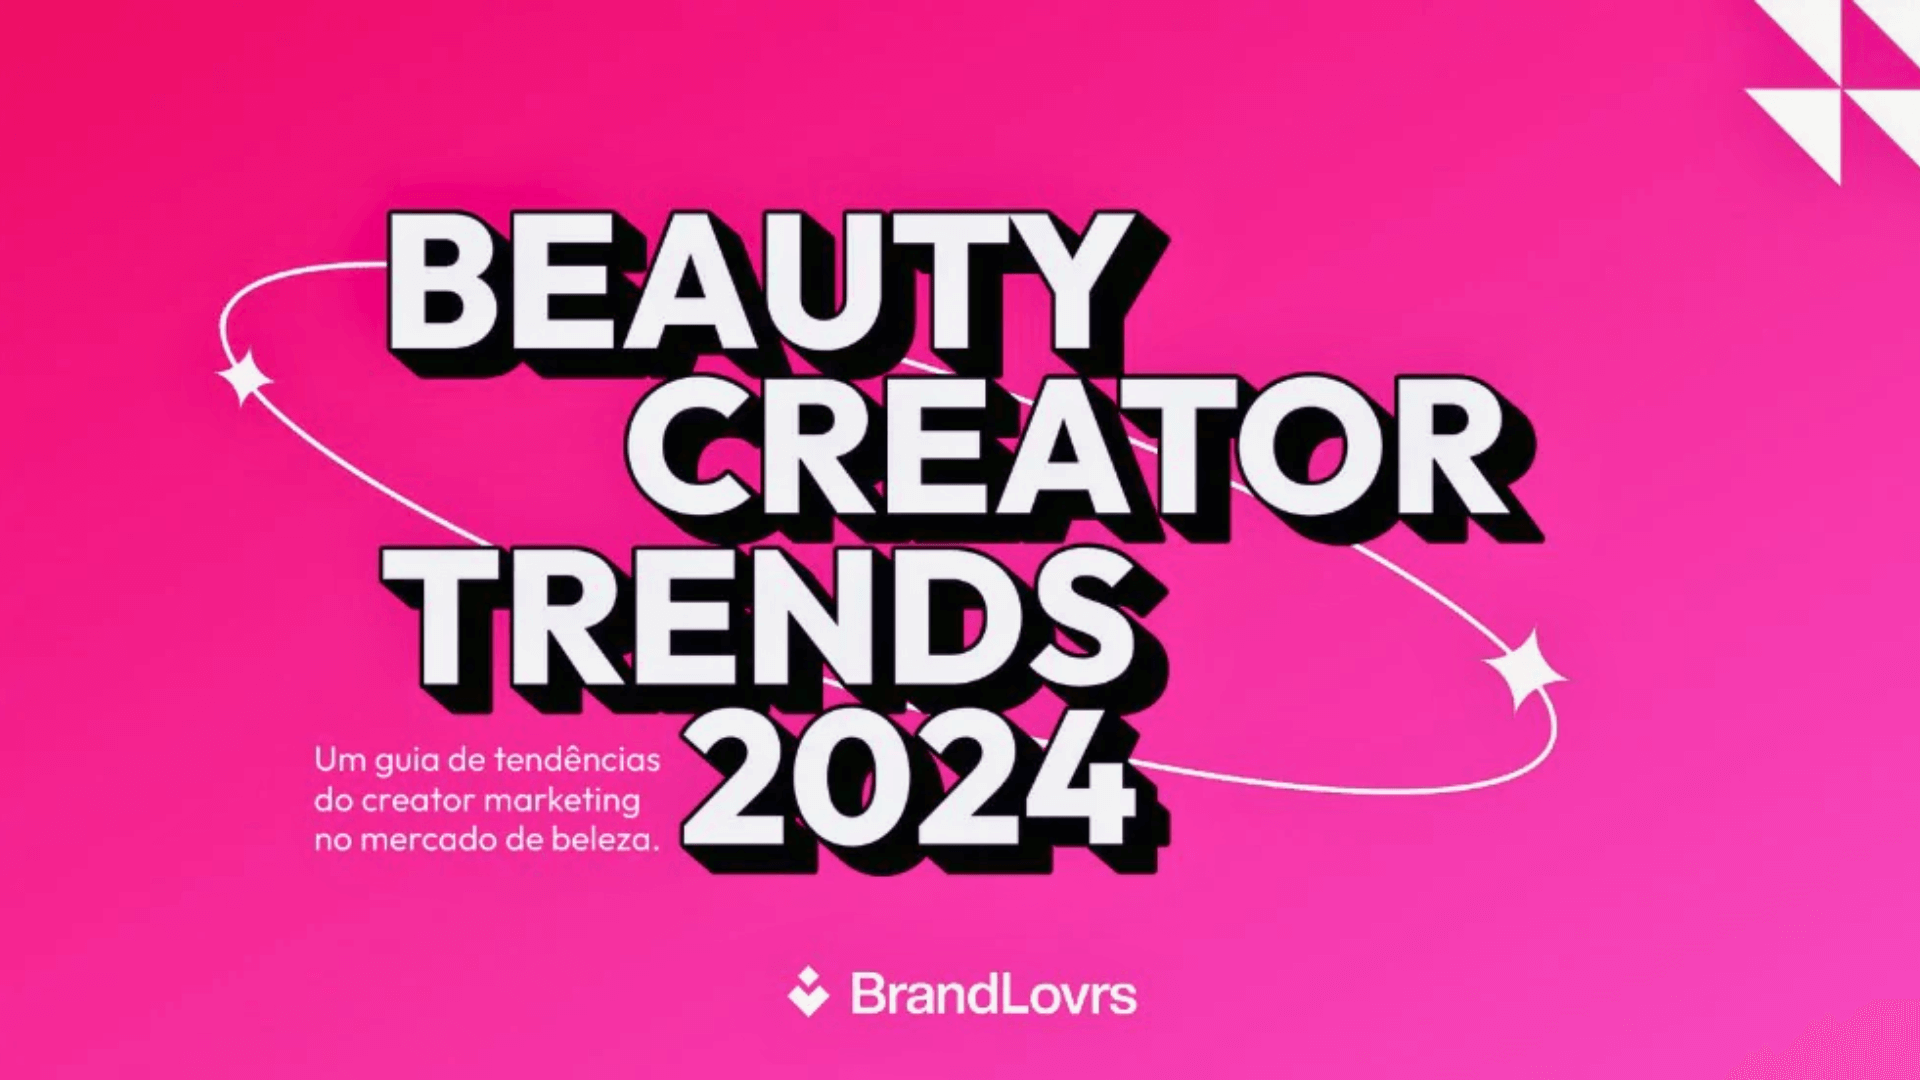 Report da BrandLovrs revela insights e tendências no mercado de beleza brasileiro em 2024